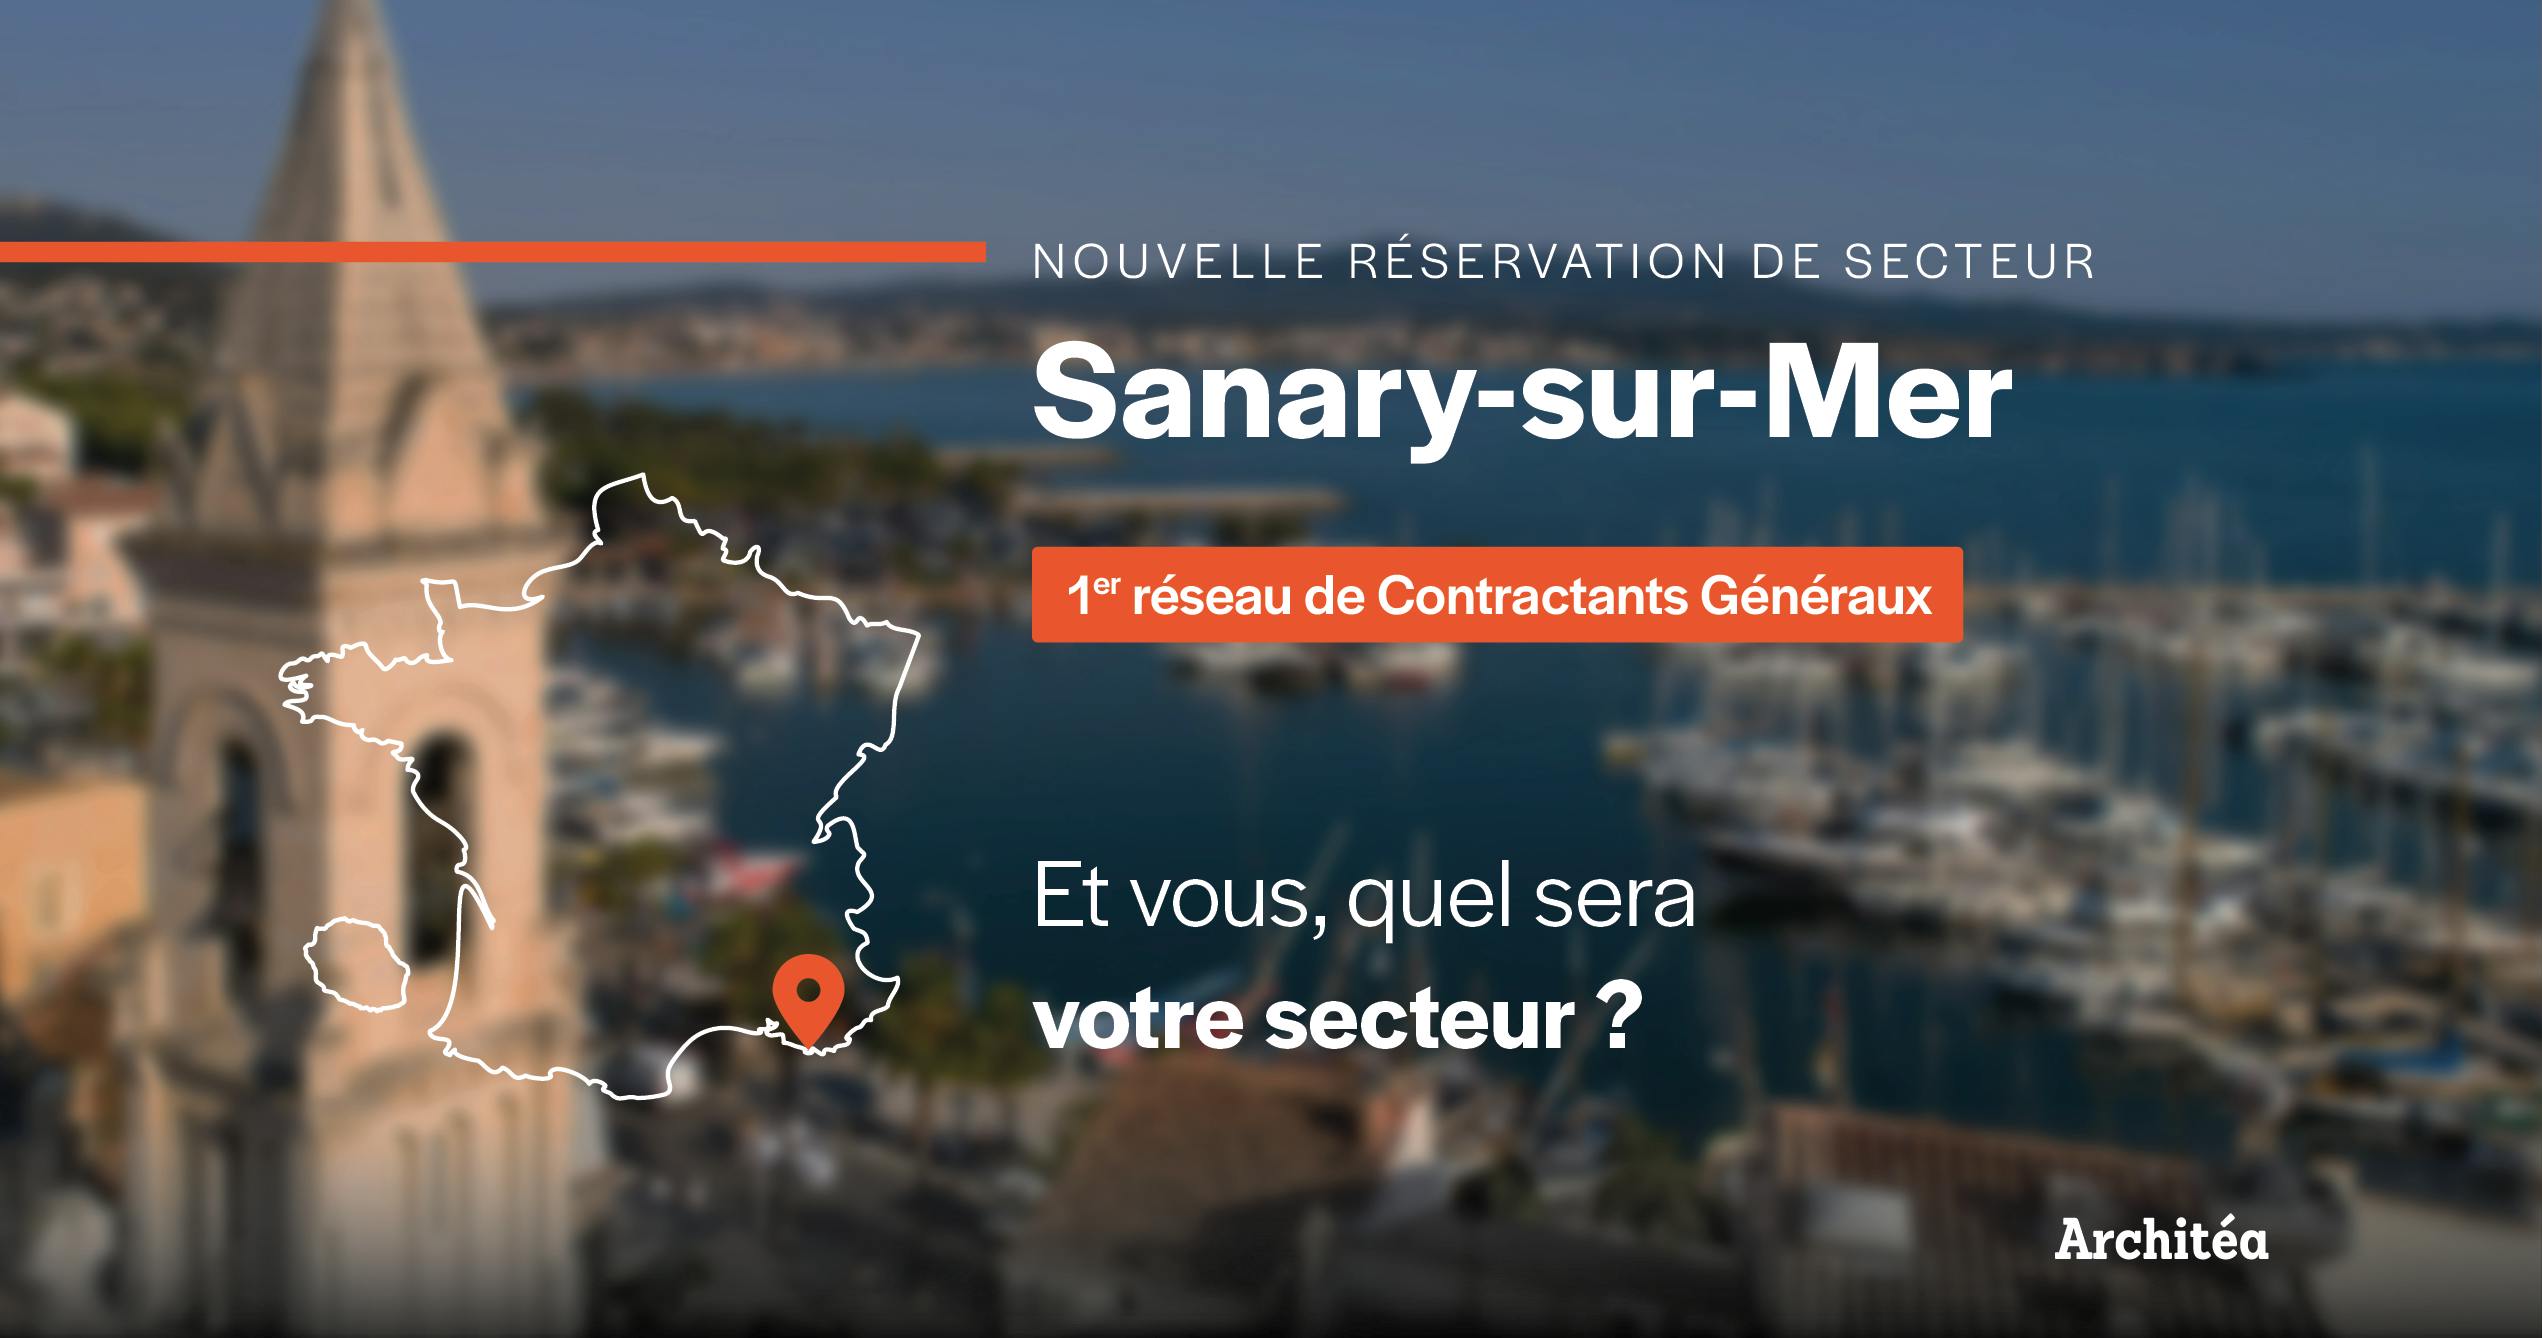 Réservation de secteur Sanary-sur-Mer